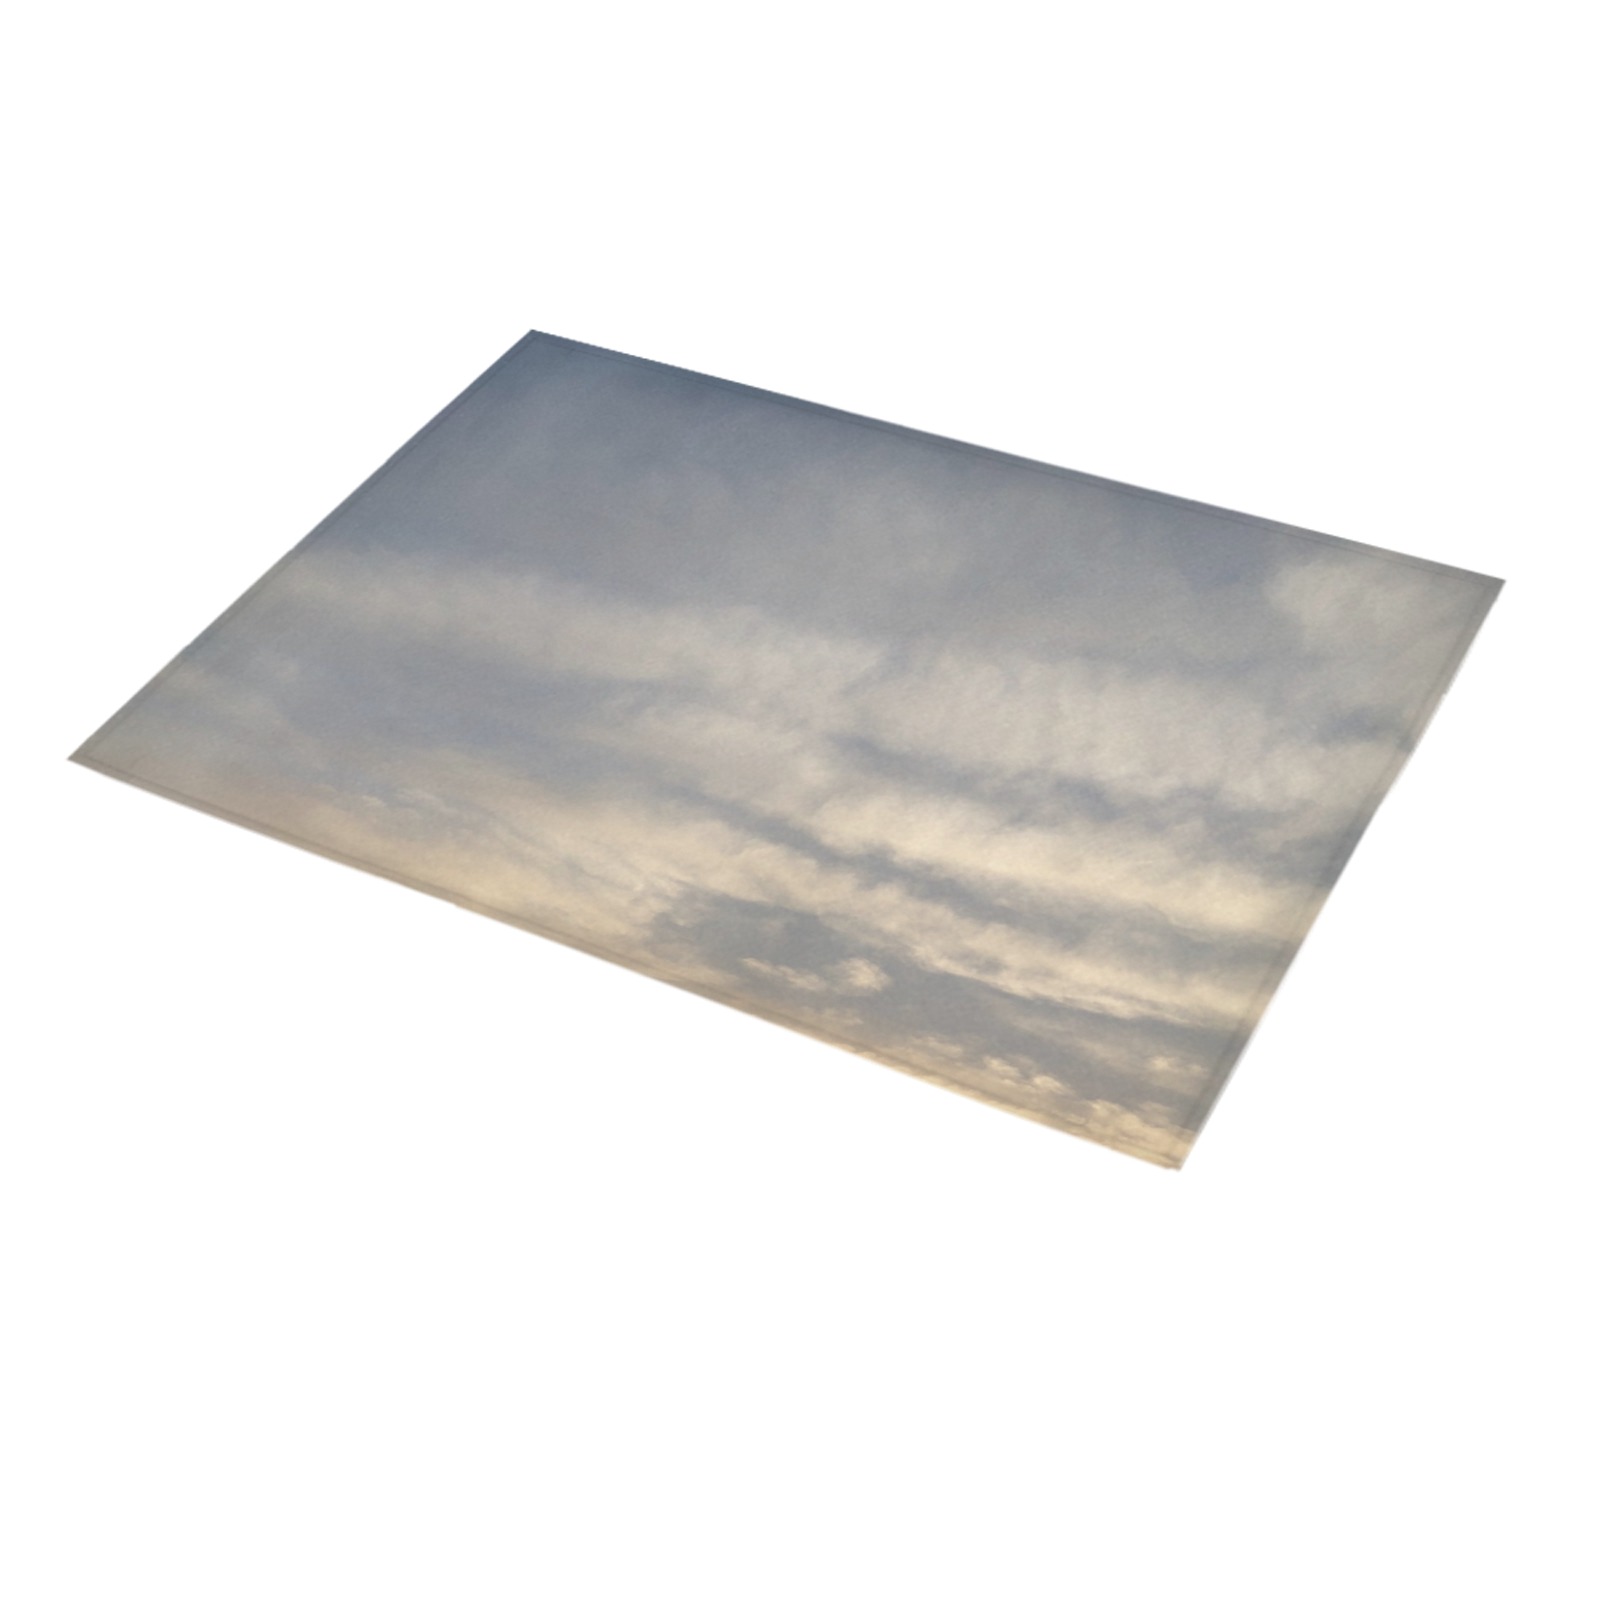 Rippled Cloud Collection Azalea Doormat 30" x 18" (Sponge Material)